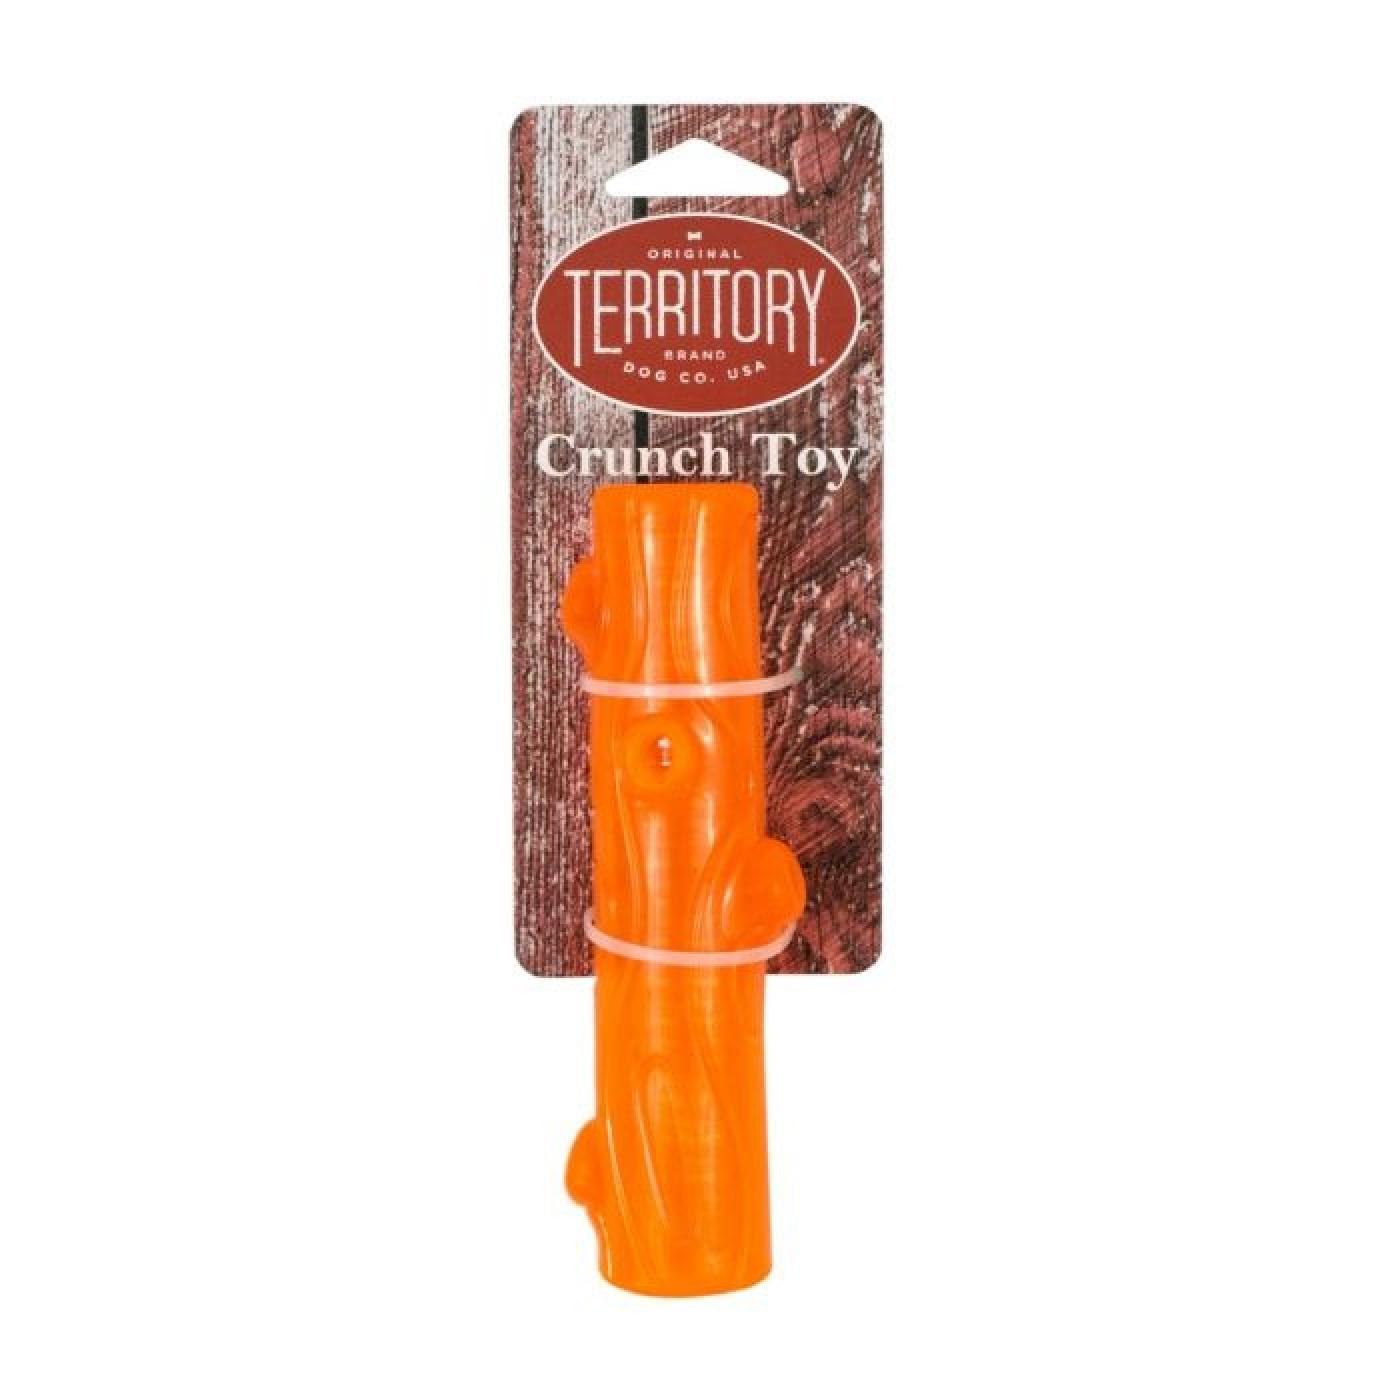 Original Territory Rubber Crunch Stick